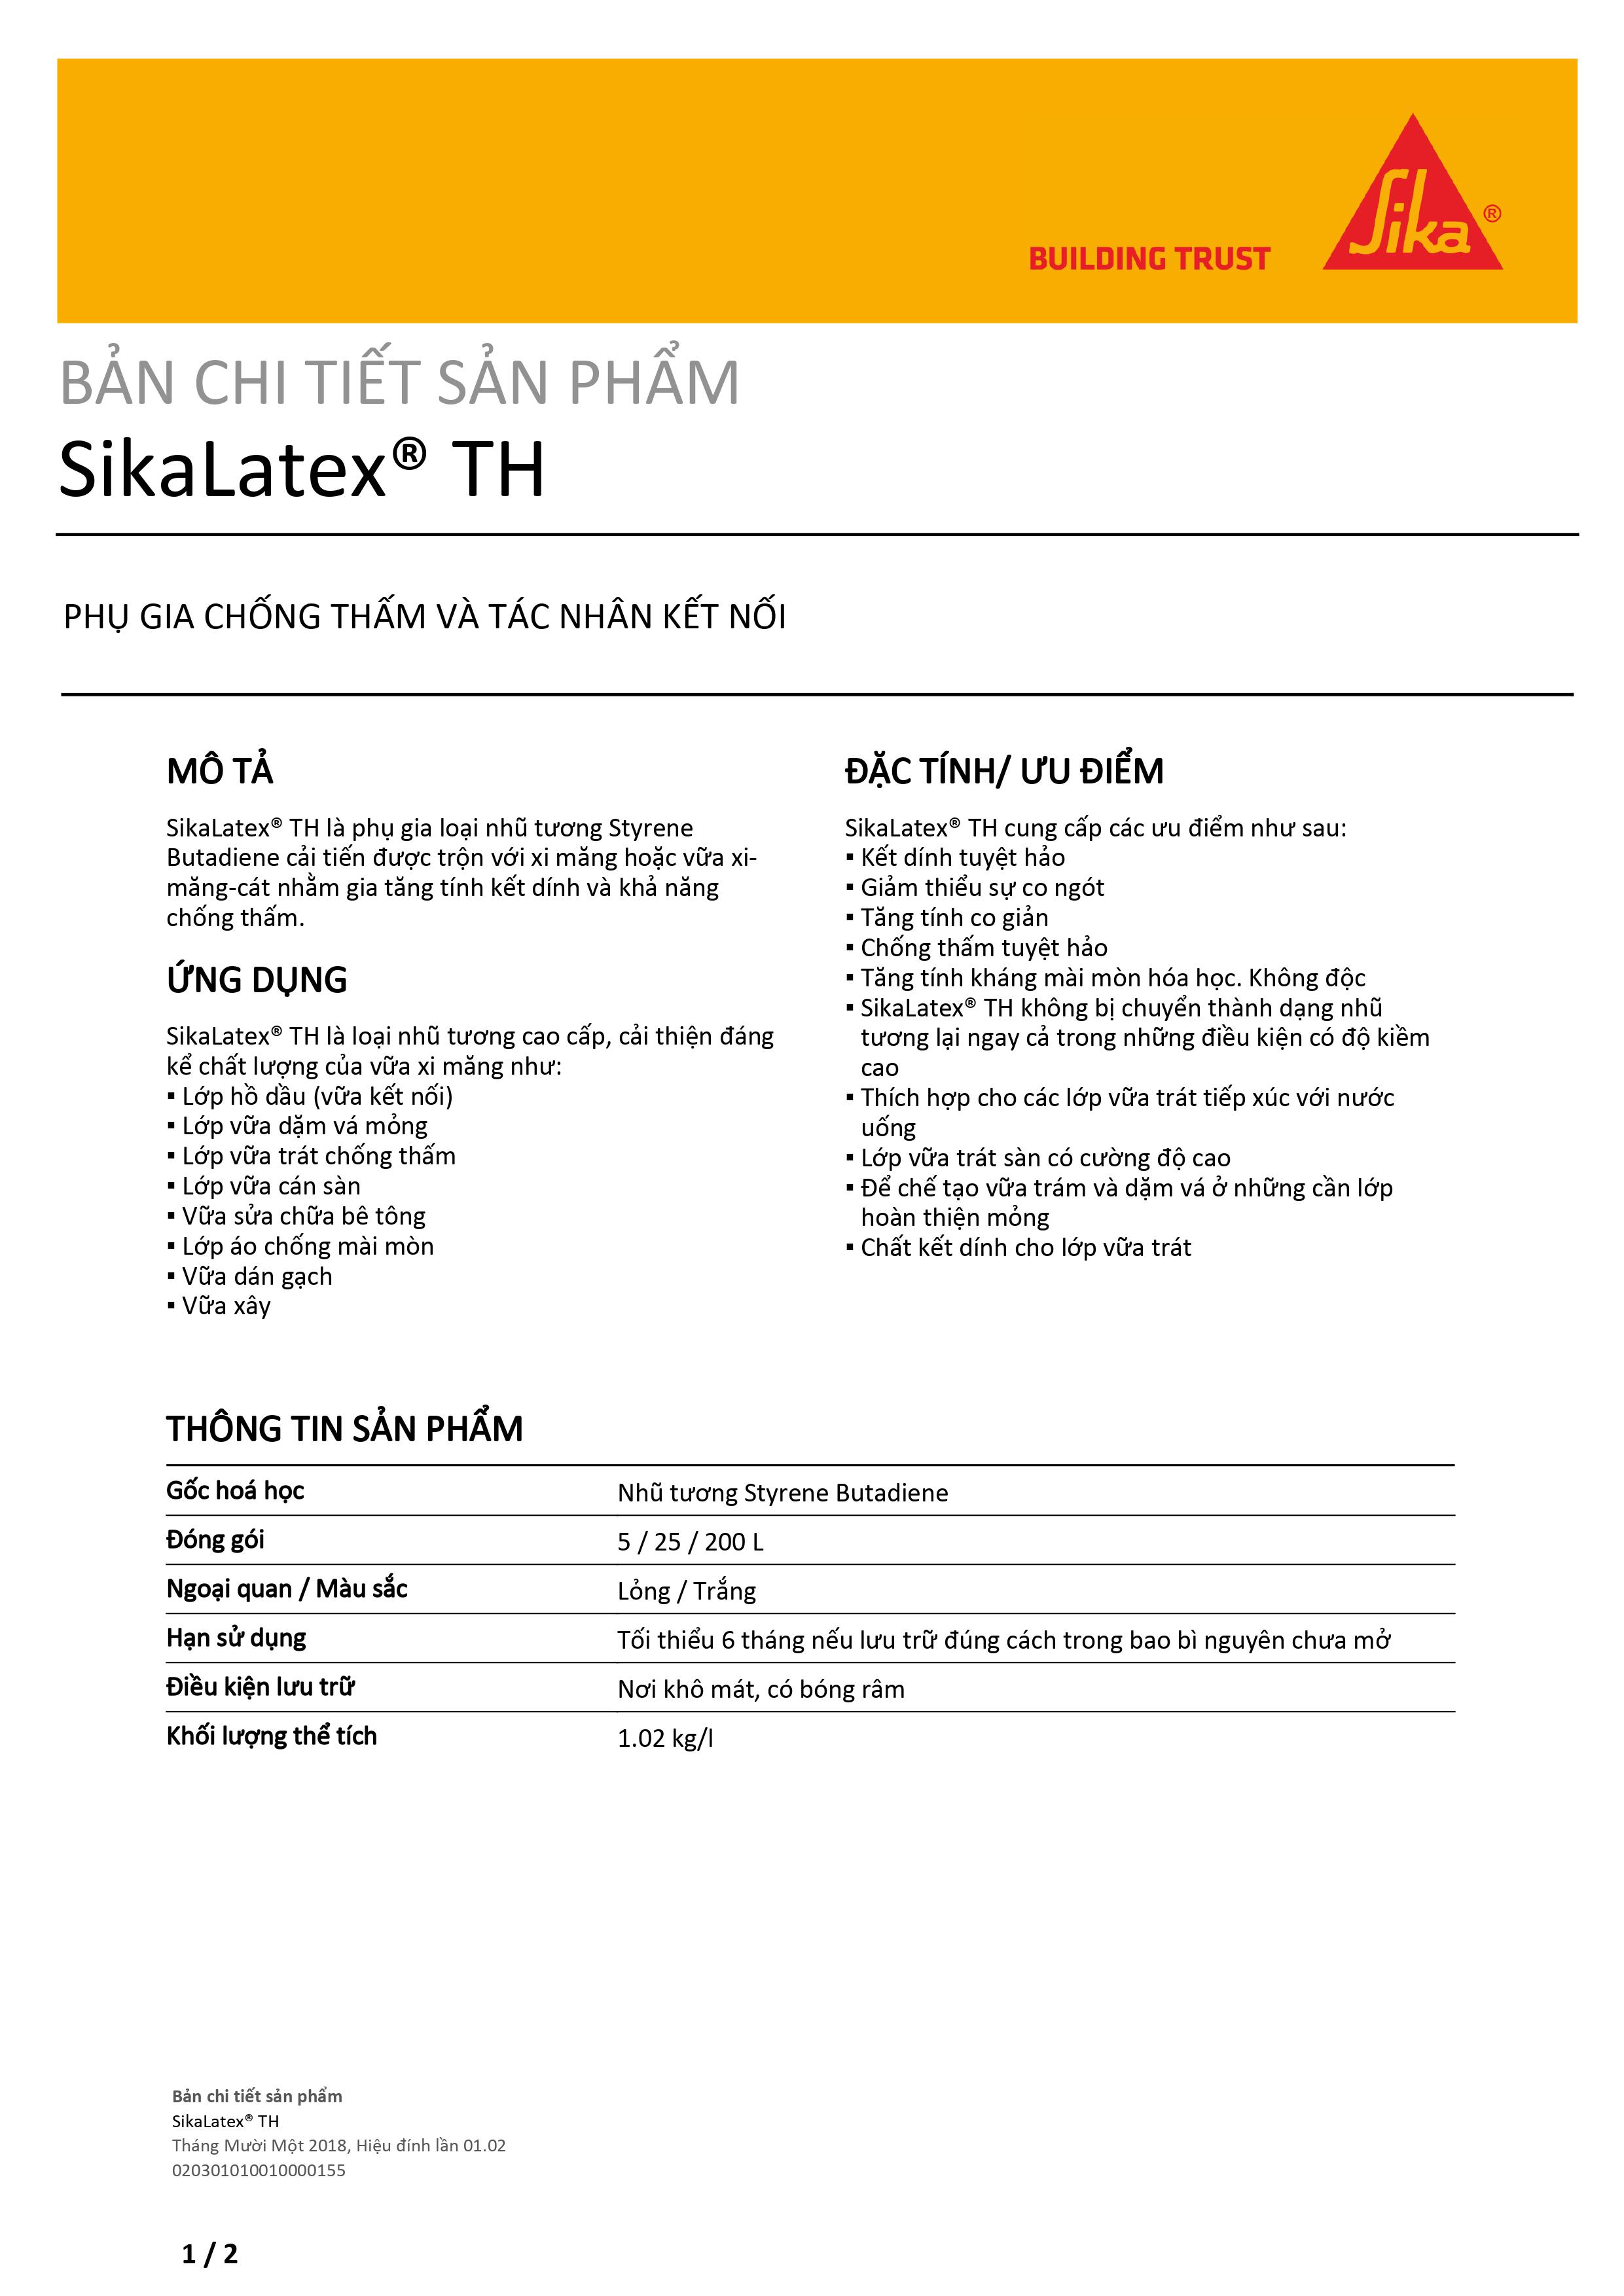 Sika - Phụ gia chống thấm và tác nhân kết nối Sika Latex TH (Can 2 lít)